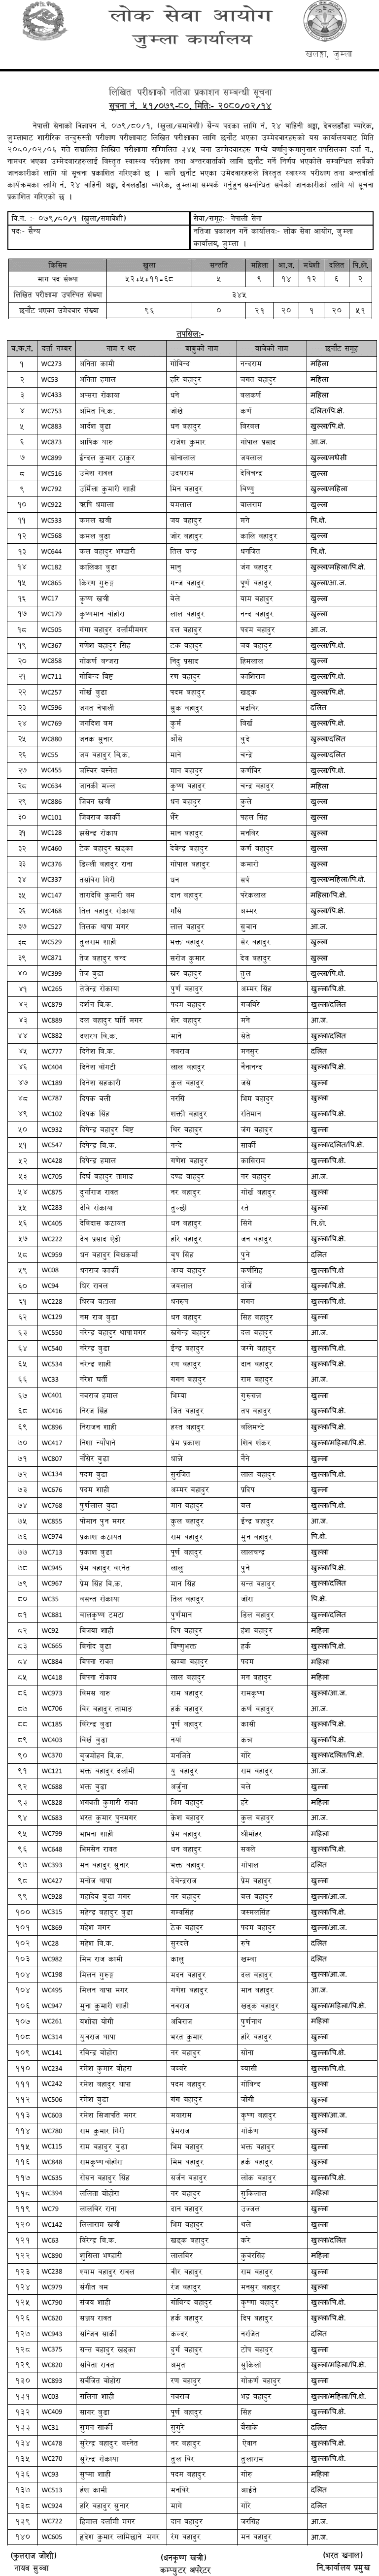 Nepal Army Sainya Written Exam Result 2080 (Jumla)